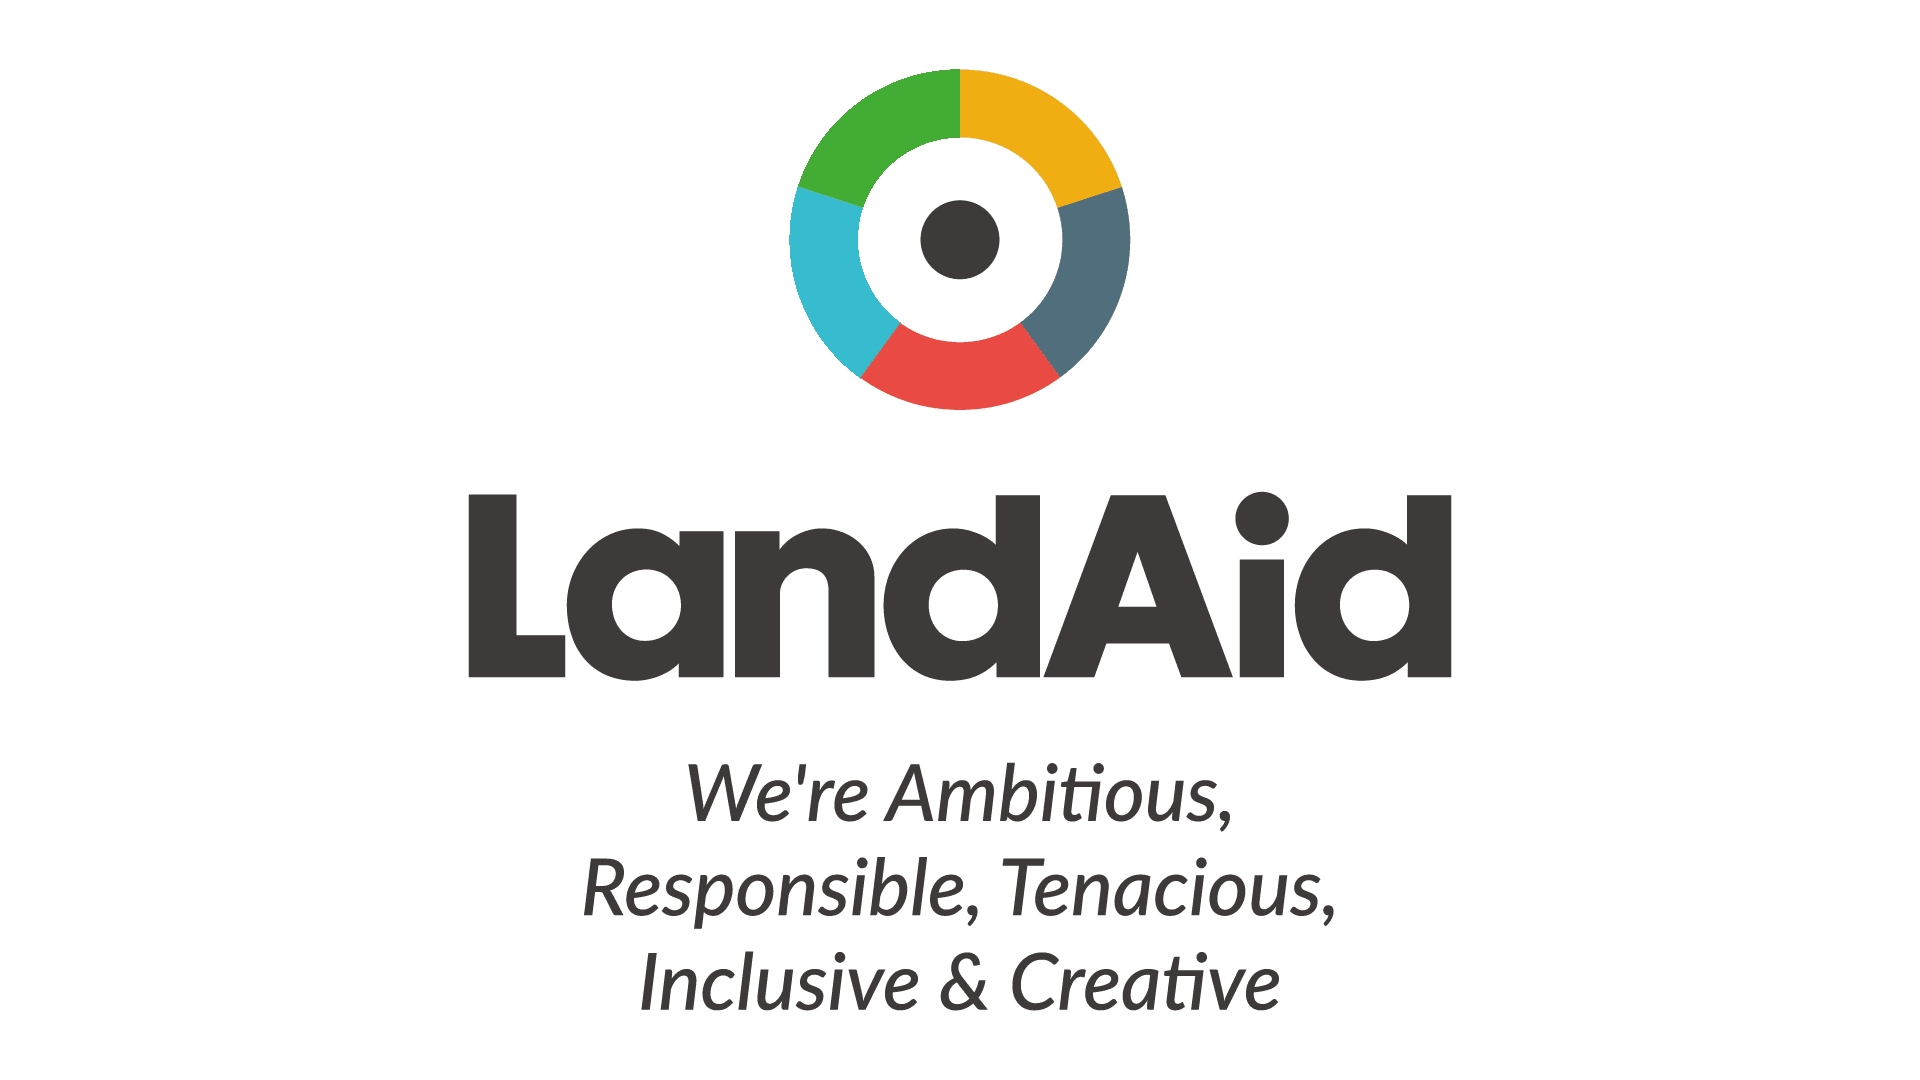 LandAid Values